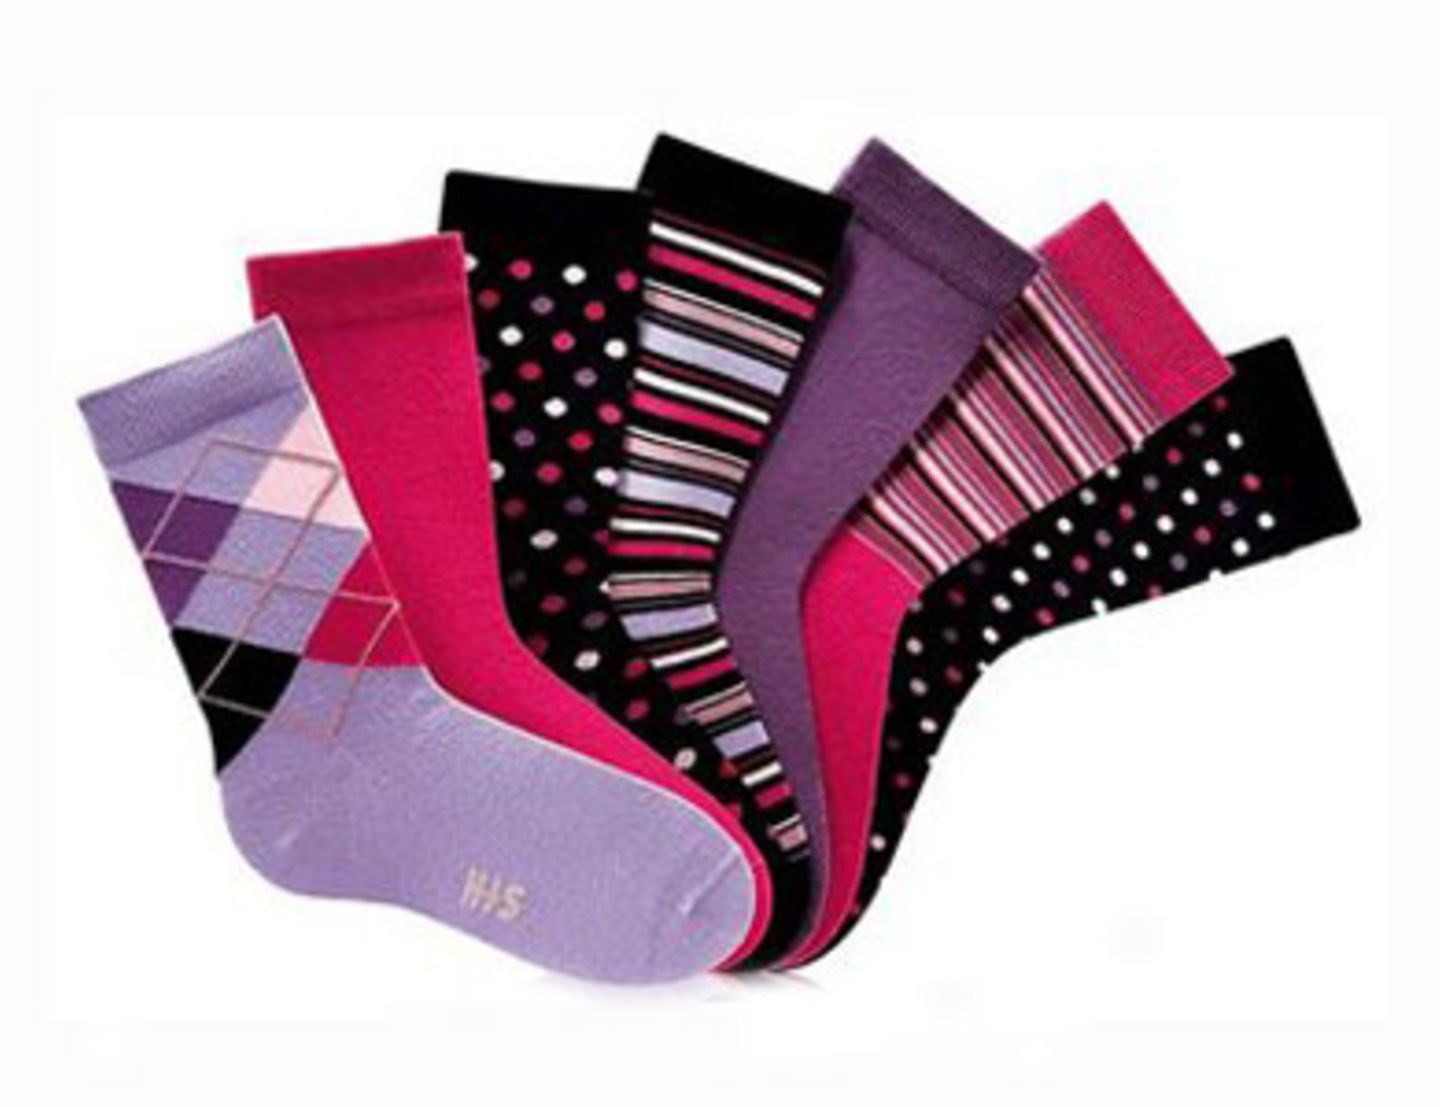 Socken in Lilia und Pink von his. Sieben Stück für ca. 17 Euro